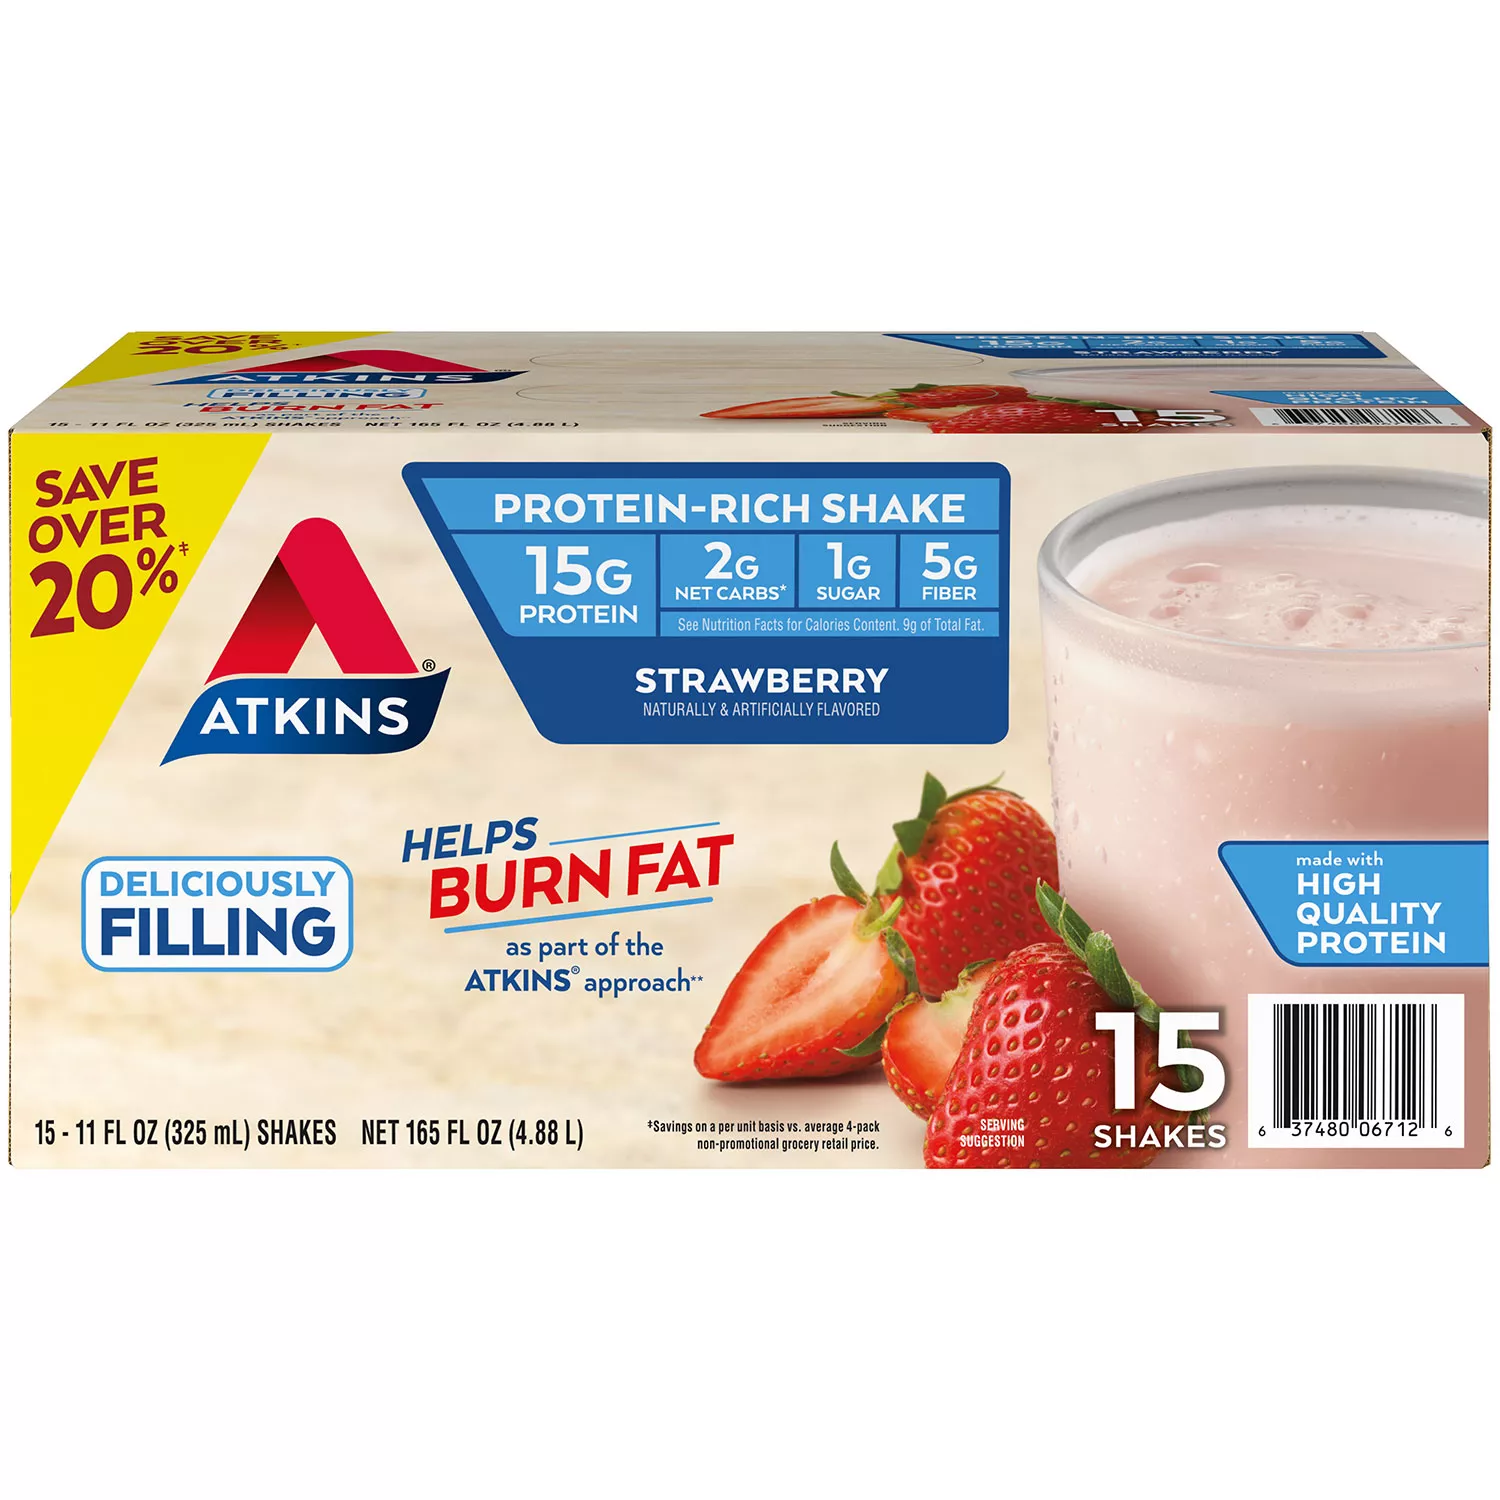 Atkins Gluten Free Protein-Rich Shake Strawberry